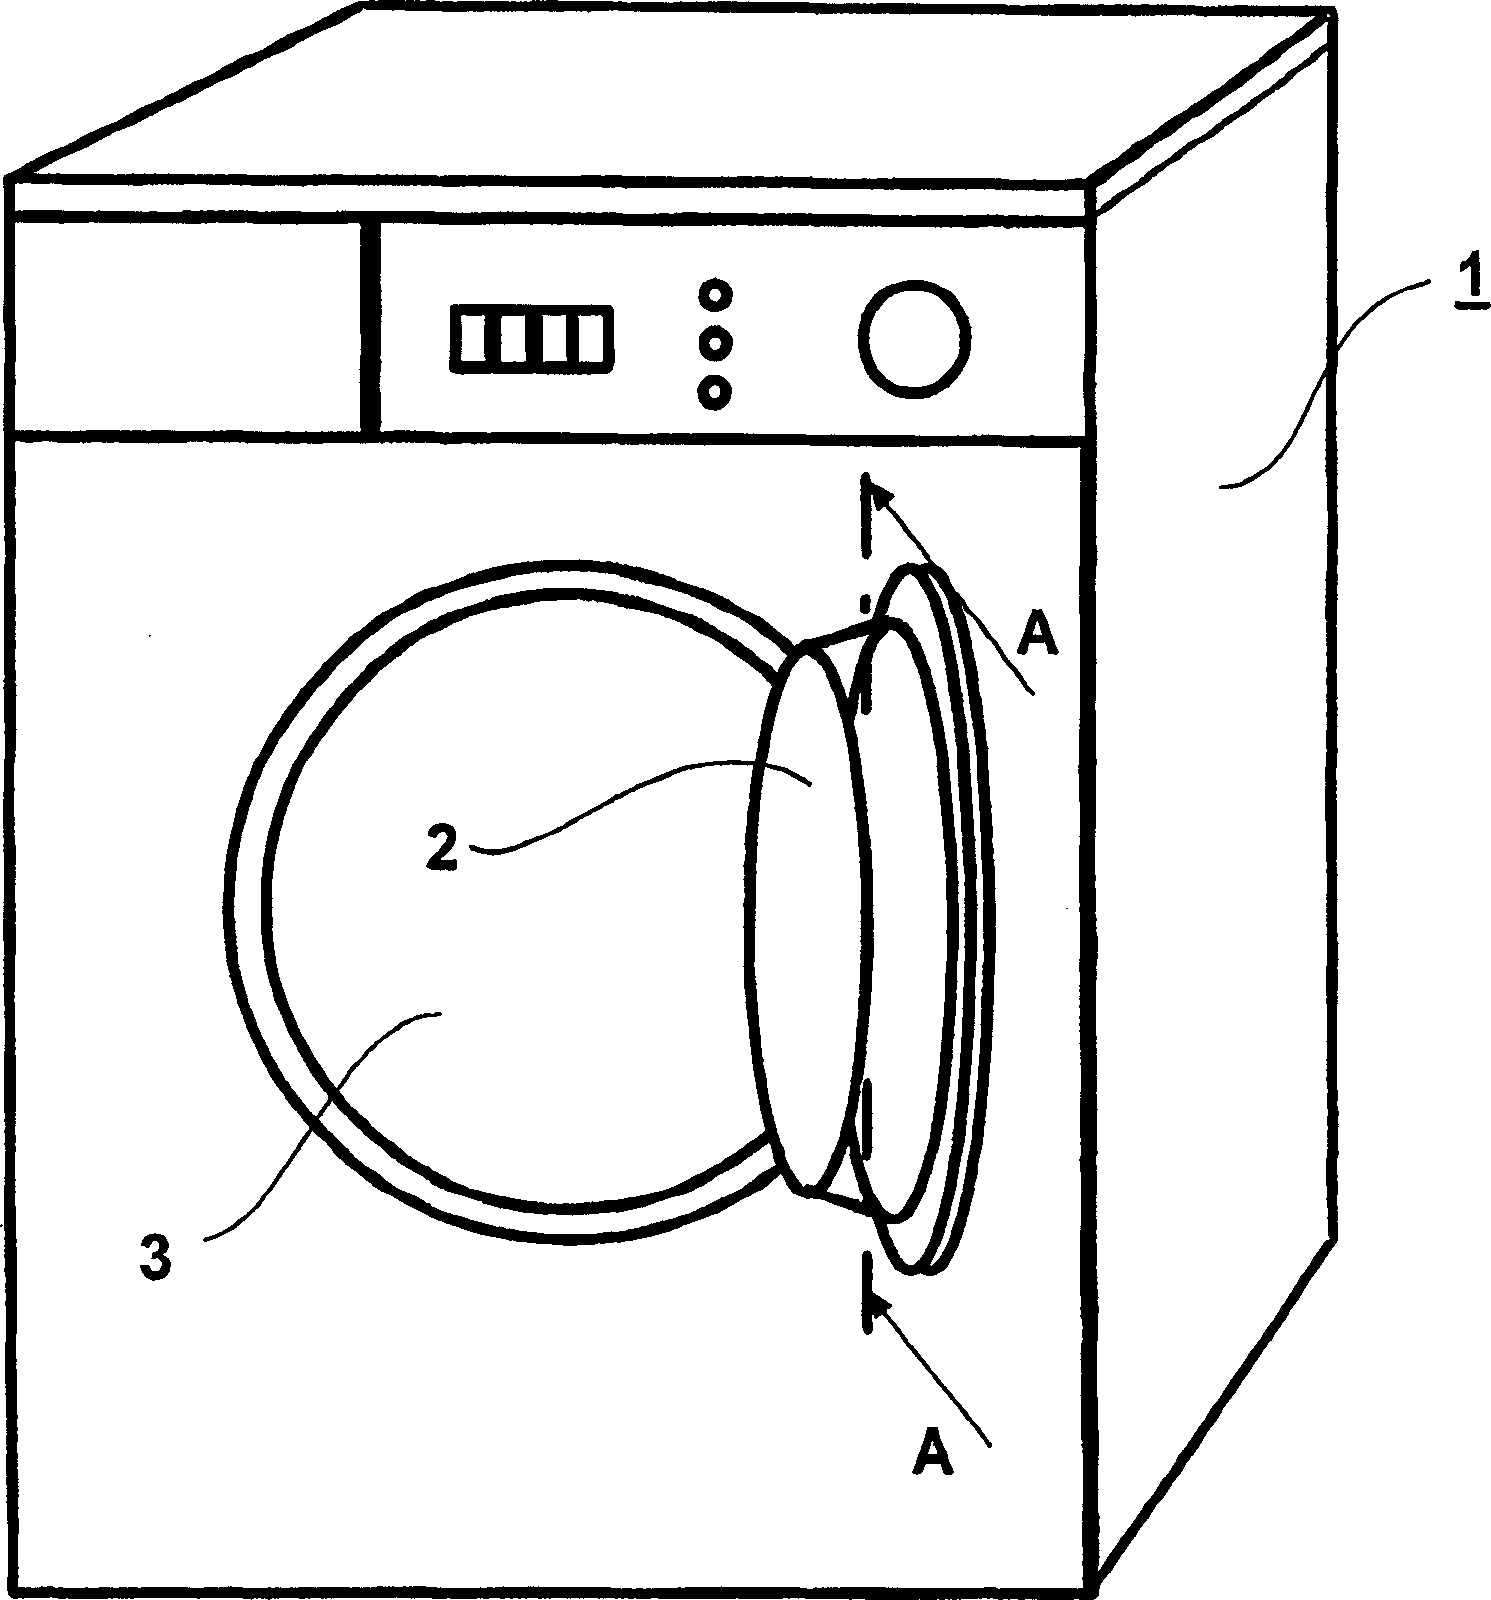 Sealing type prothole window for front-loading drum washing machine